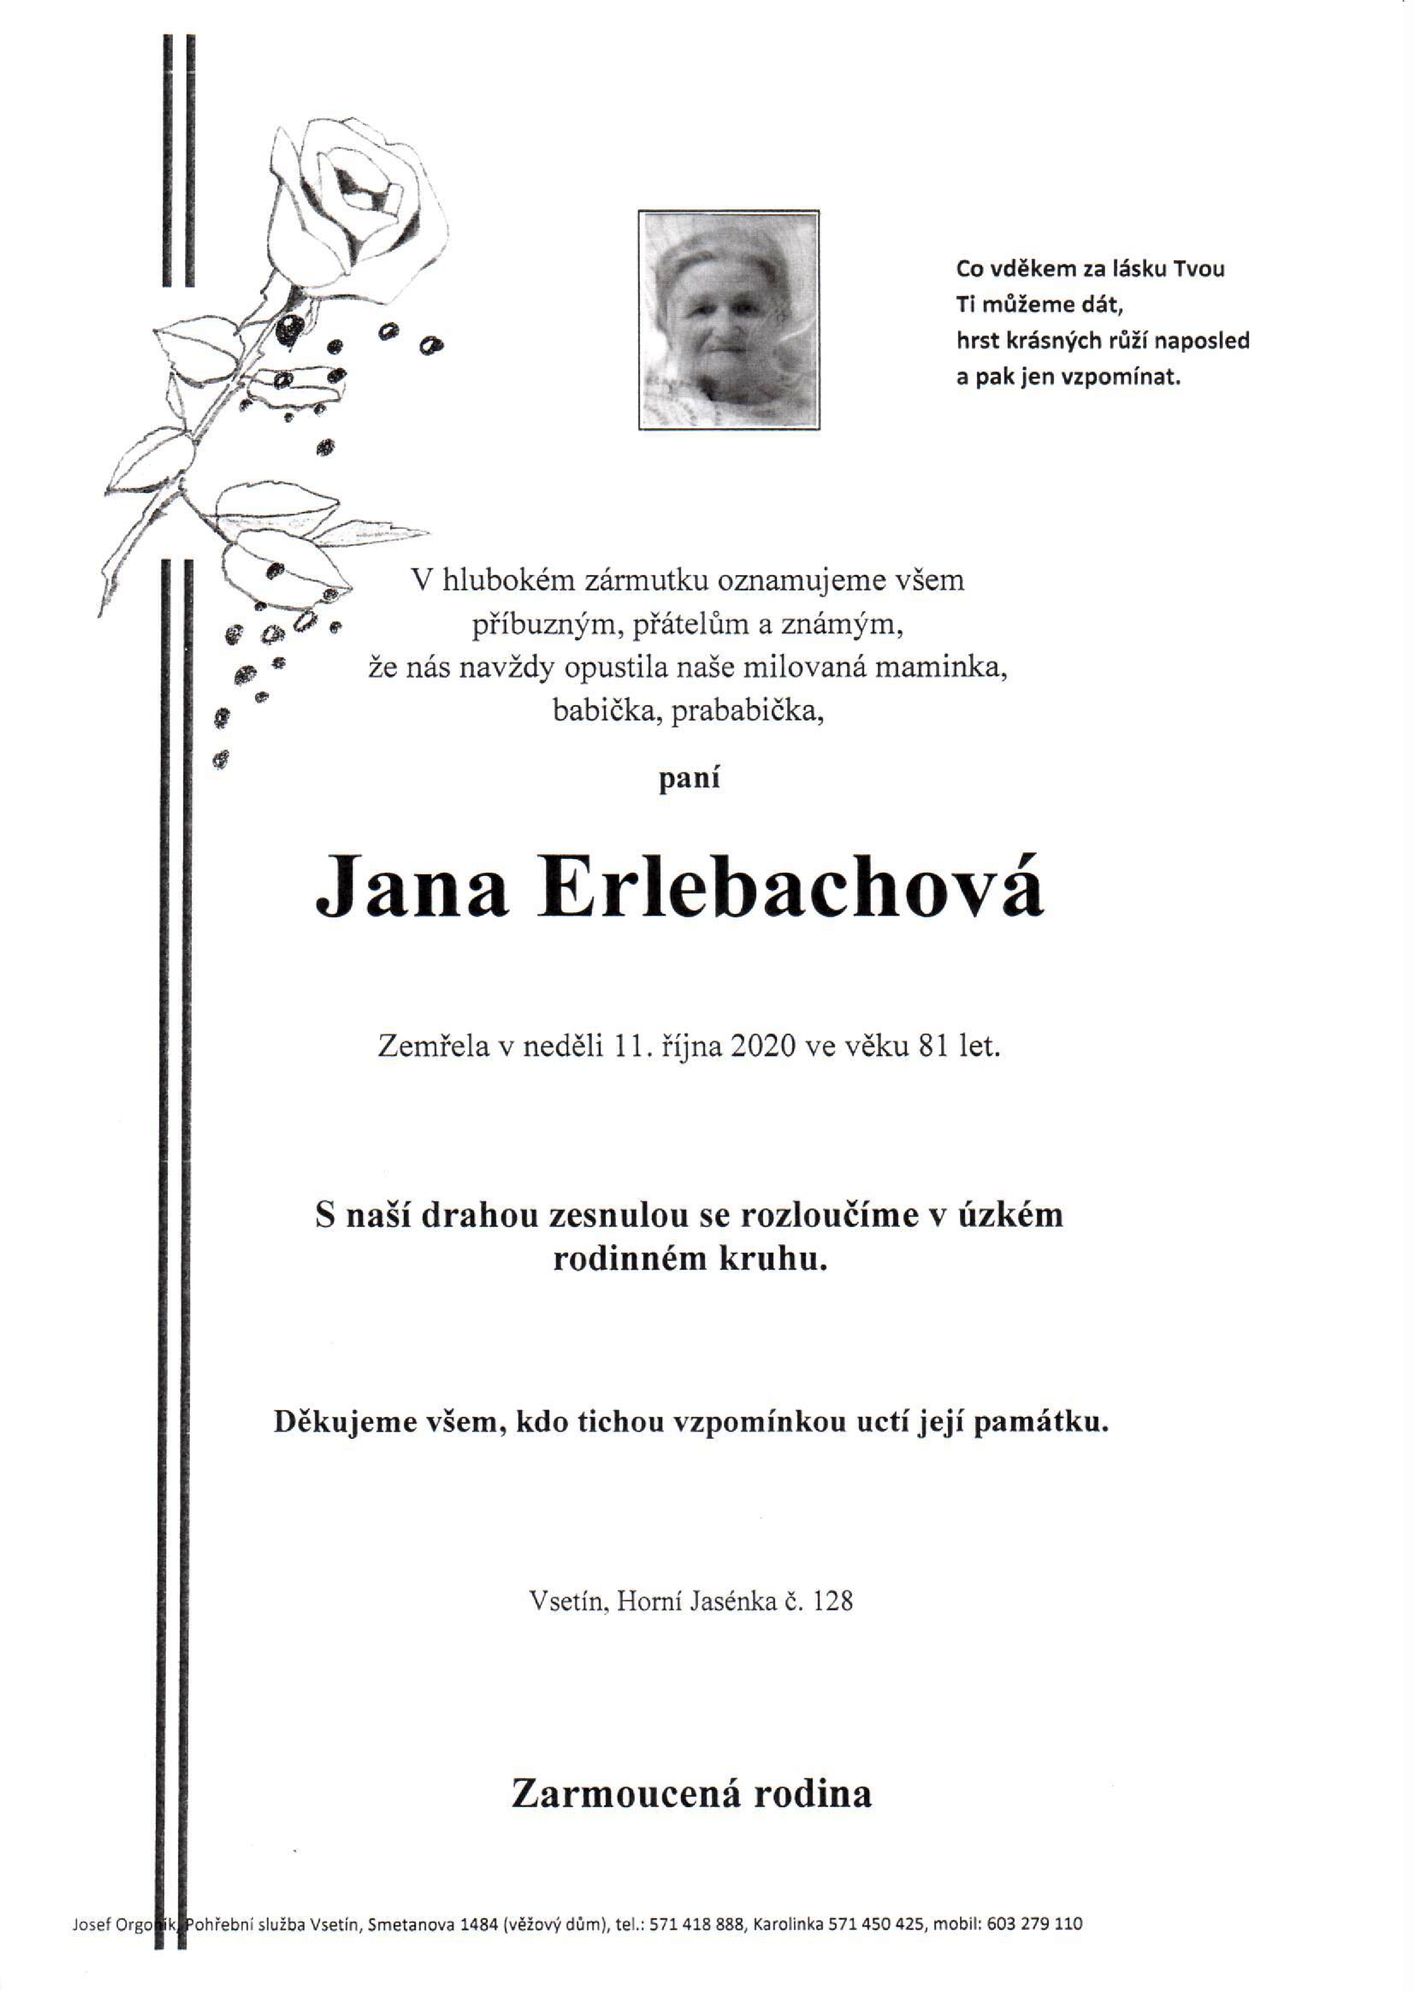 Jana Erlebachová